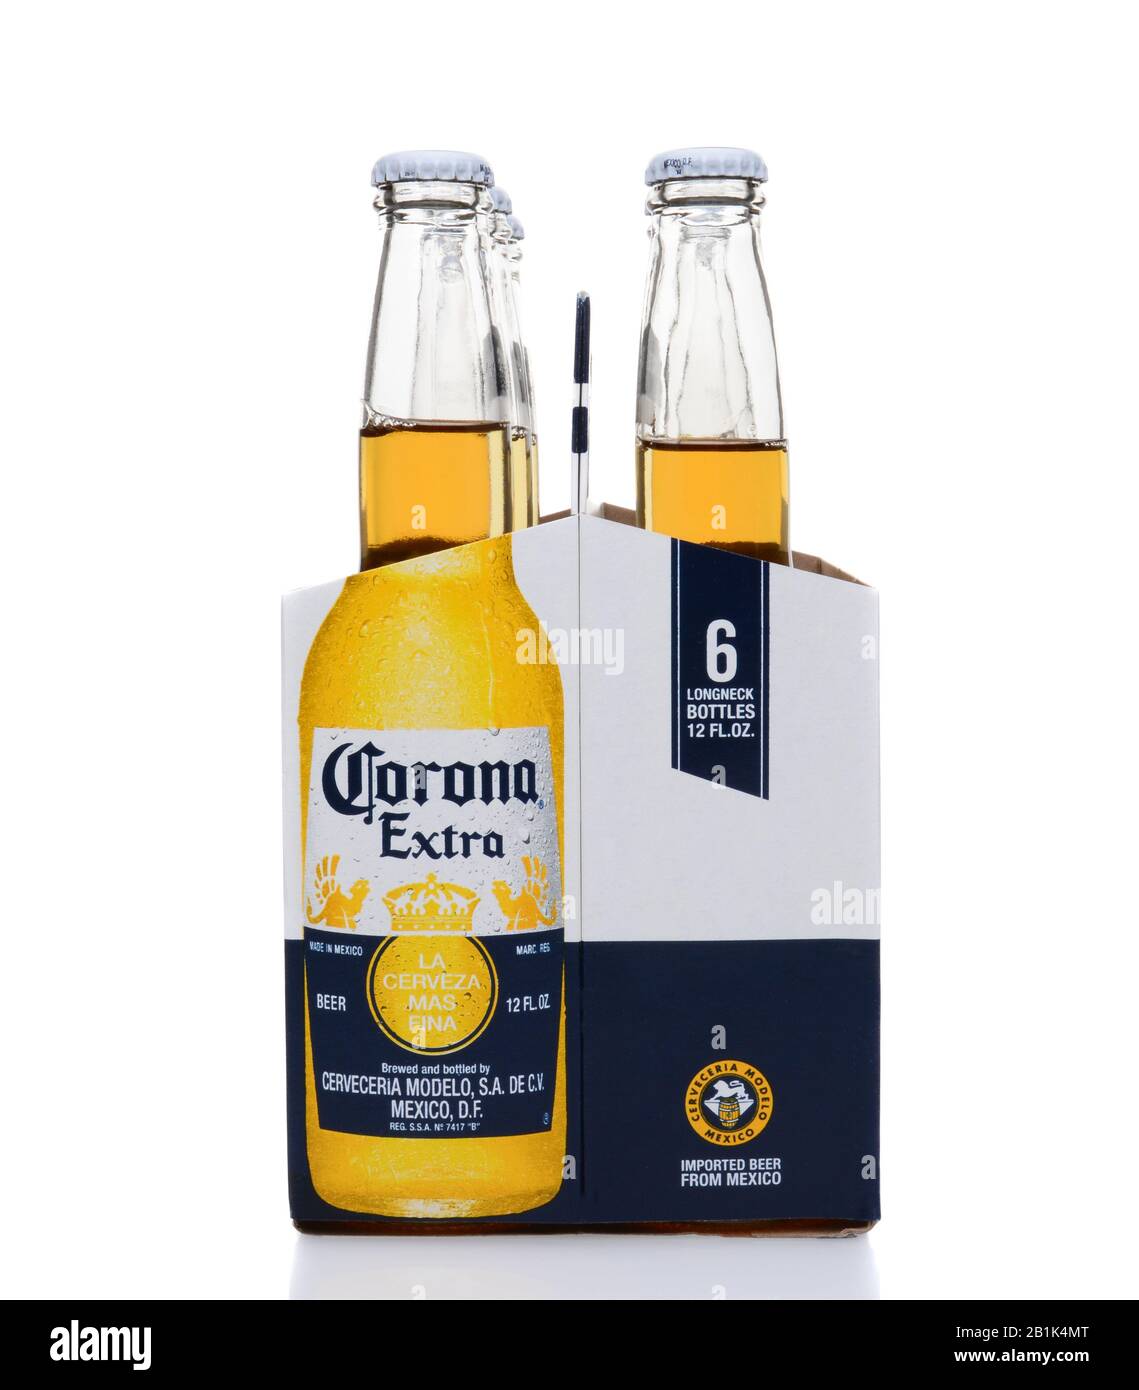 Irvine, CA - 25. MAI 2014: Ein 6er Pack Corona Extra Bier, Endansicht. Corona ist das beliebteste Importbier in den Vereinigten Staaten. Stockfoto